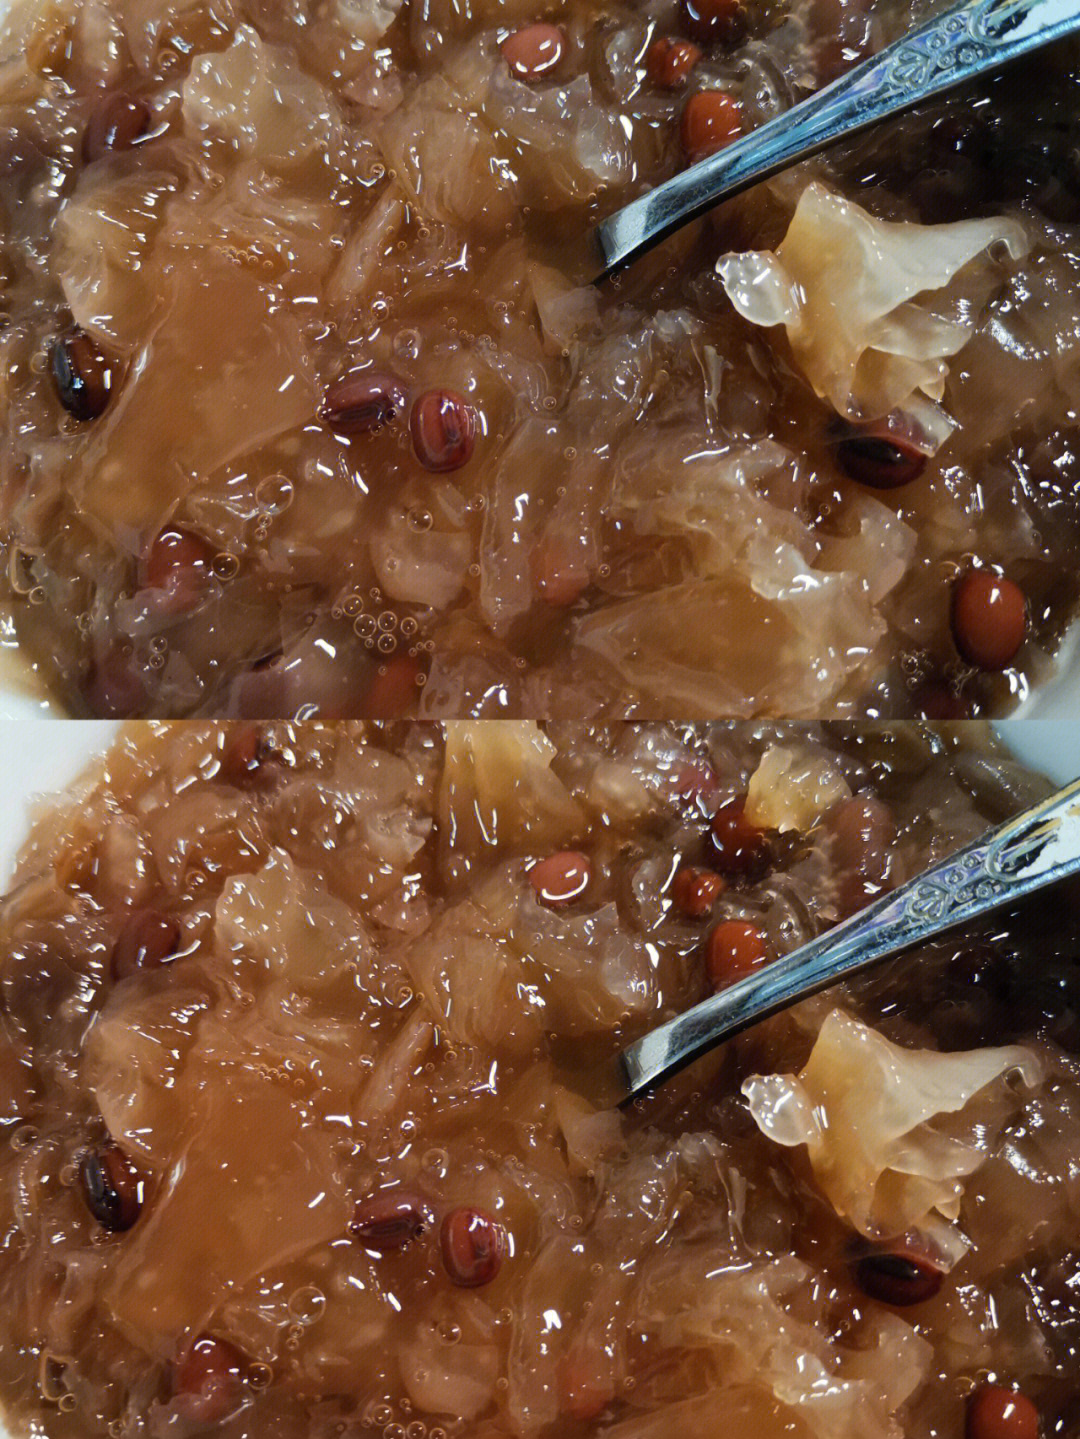 材料:红豆,银耳,冰糖适量做法:1,将红豆和银耳用冷水浸泡两小时以上